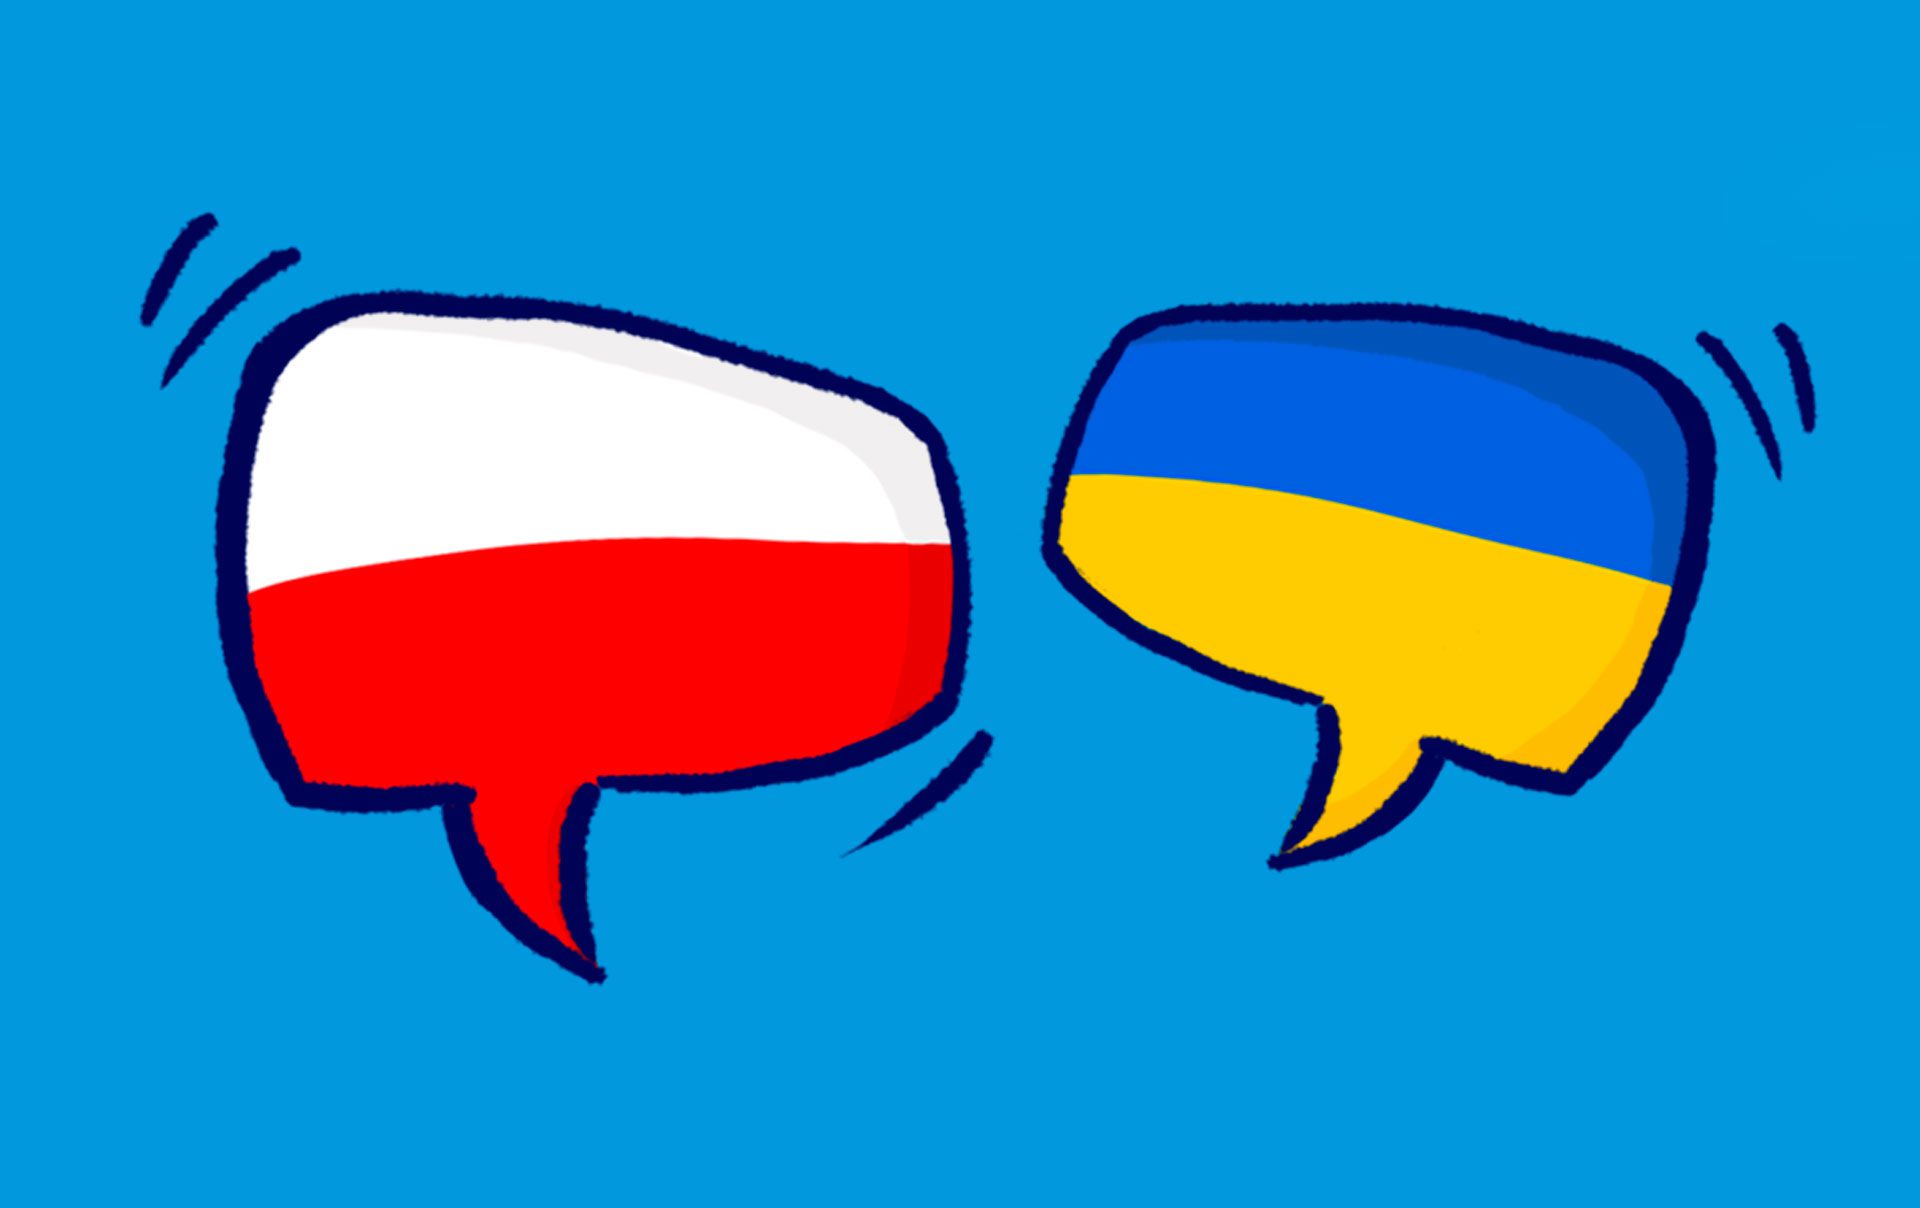 Bezpłatne lekcje języka polskiego dla pastorów i chrześcijańskich liderów